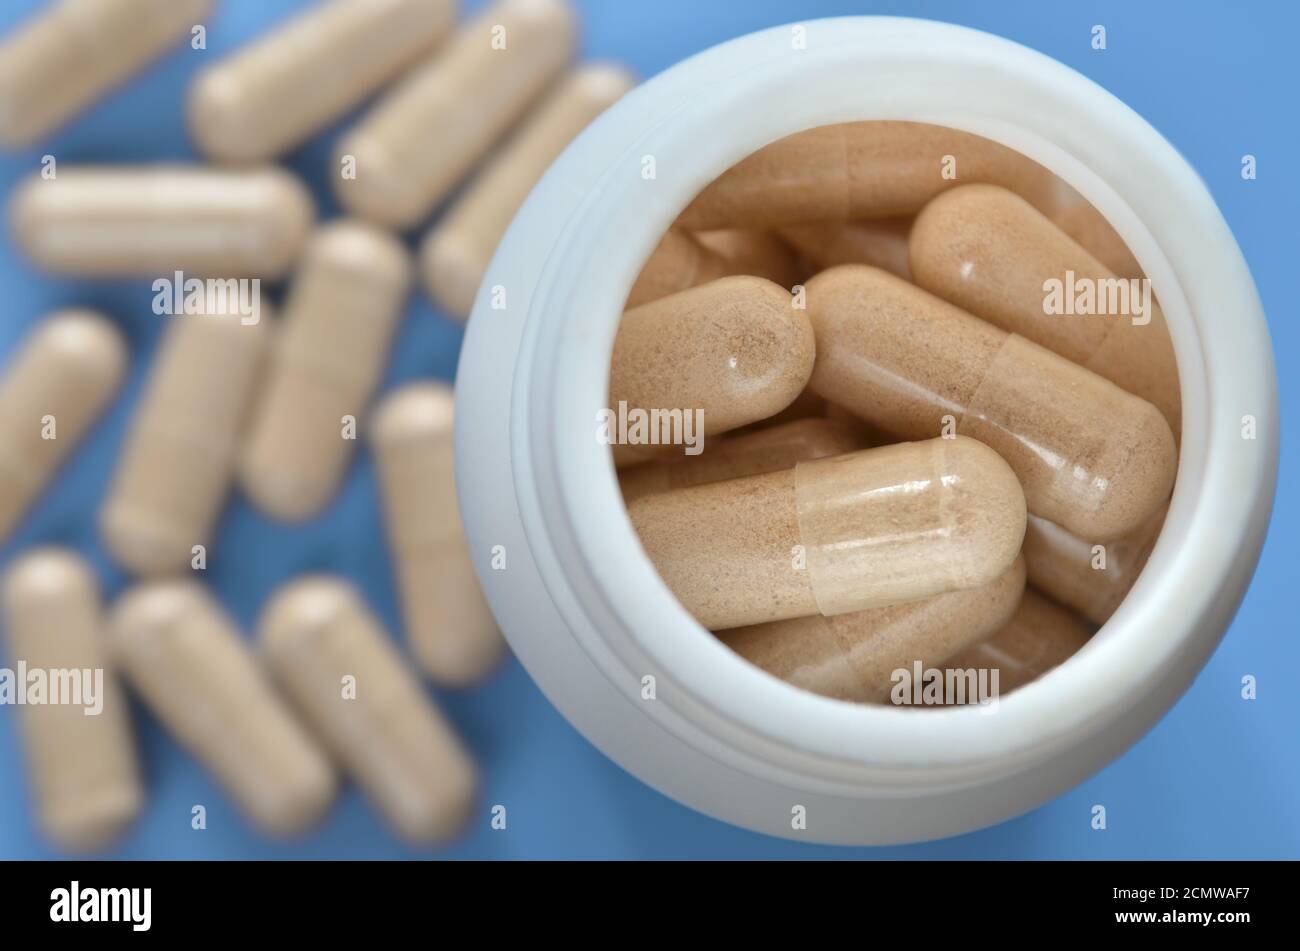 Weiße medizinische Flasche mit Pillen auf einem hellblauen defokussed Hintergrund mit verstreuten Kapseln, close-up. Gesundheitskonzept. Stockfoto